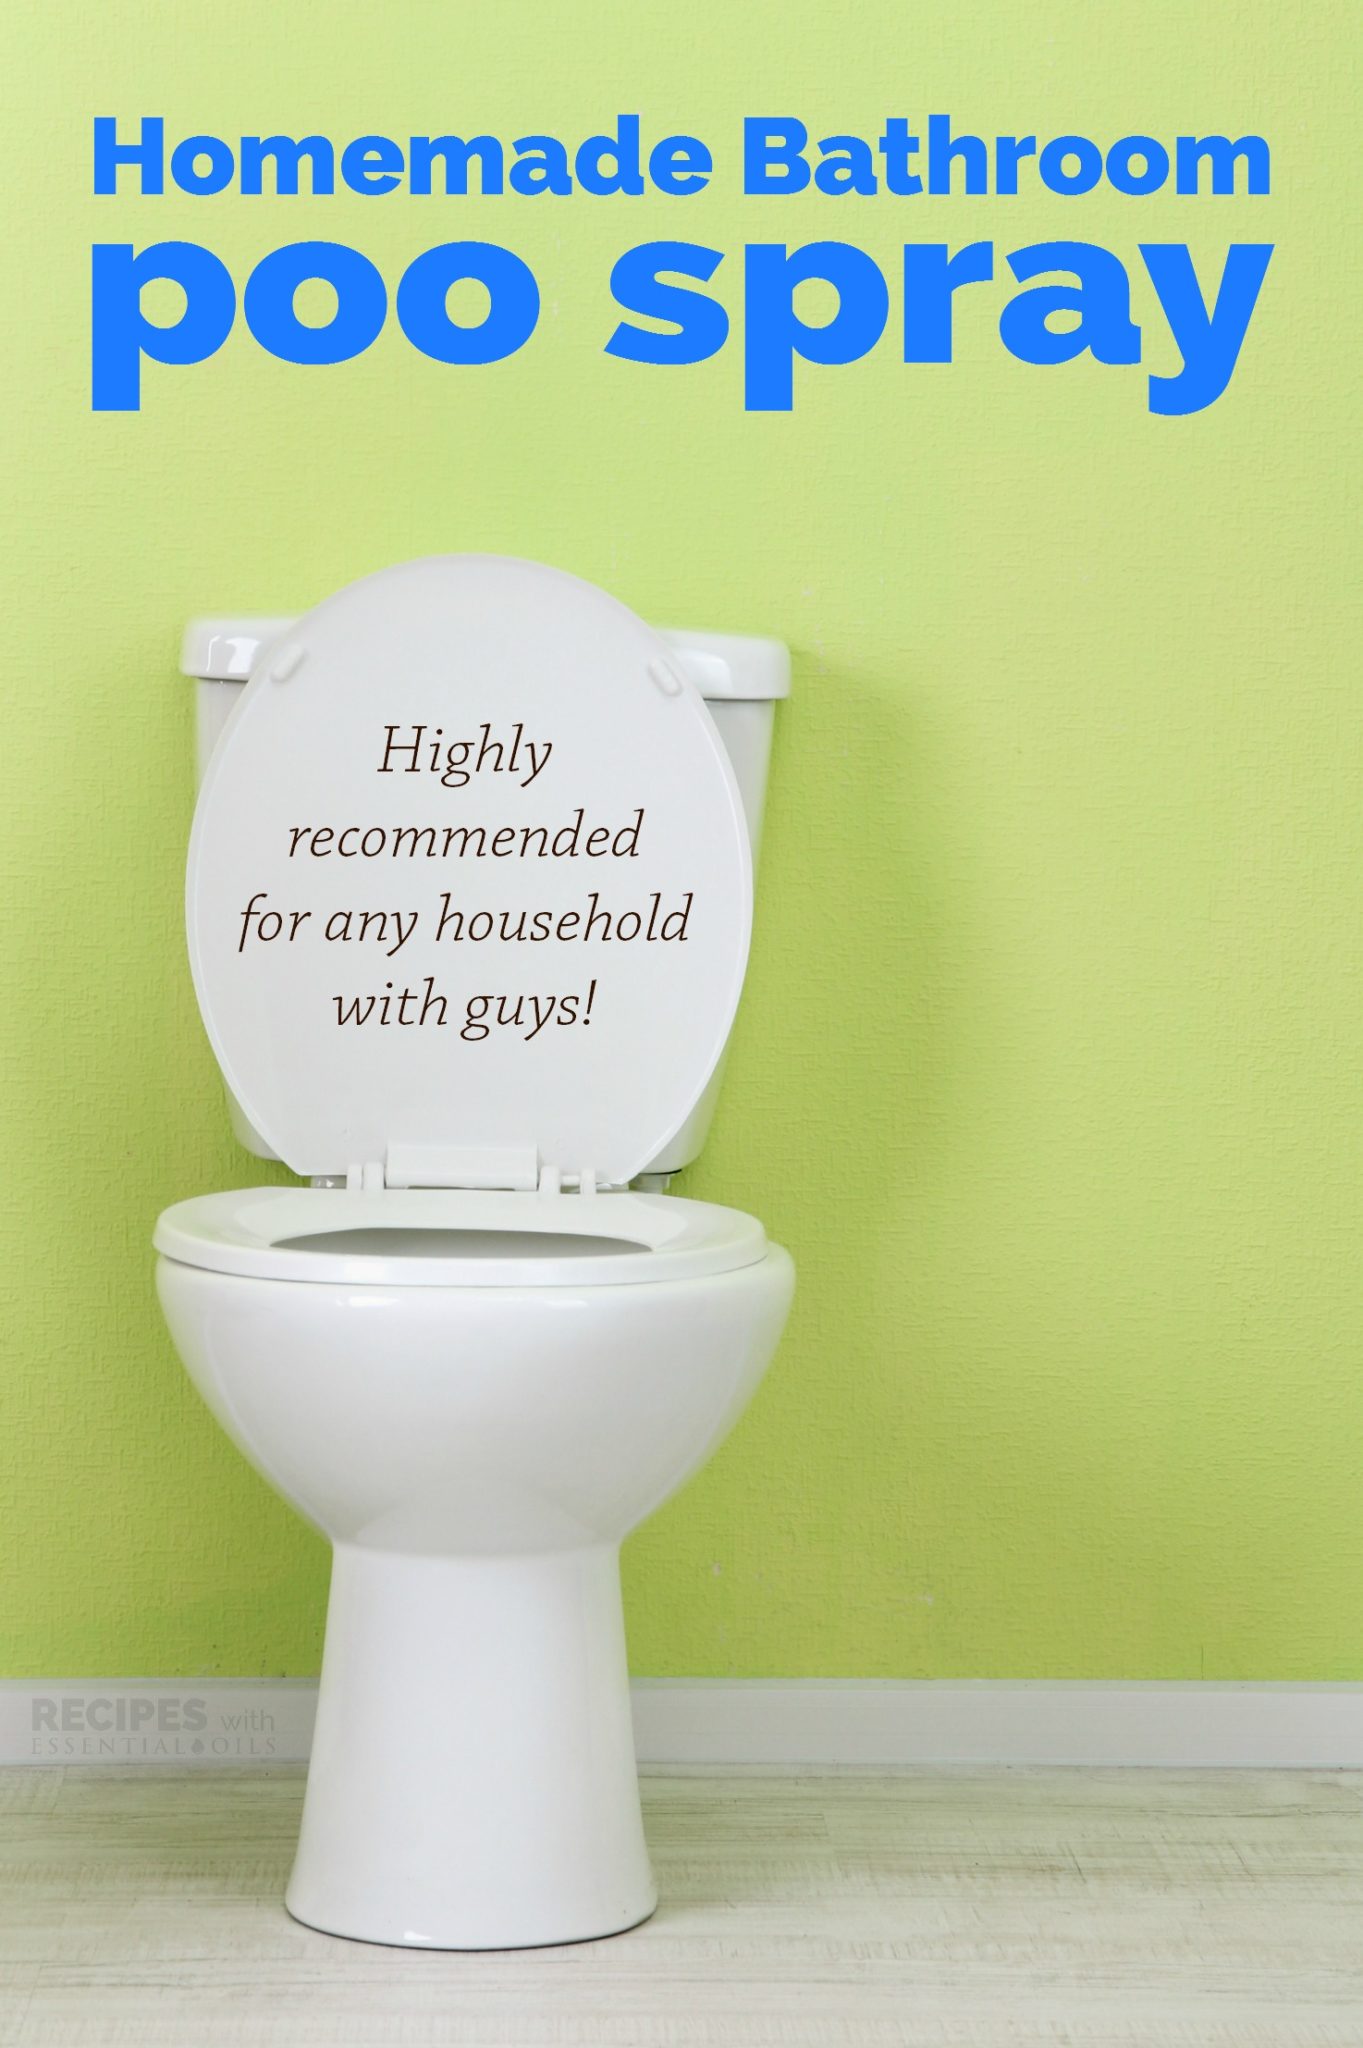 Homemade Bathroom Poo Spray from RecipeswithEssentialOils.com